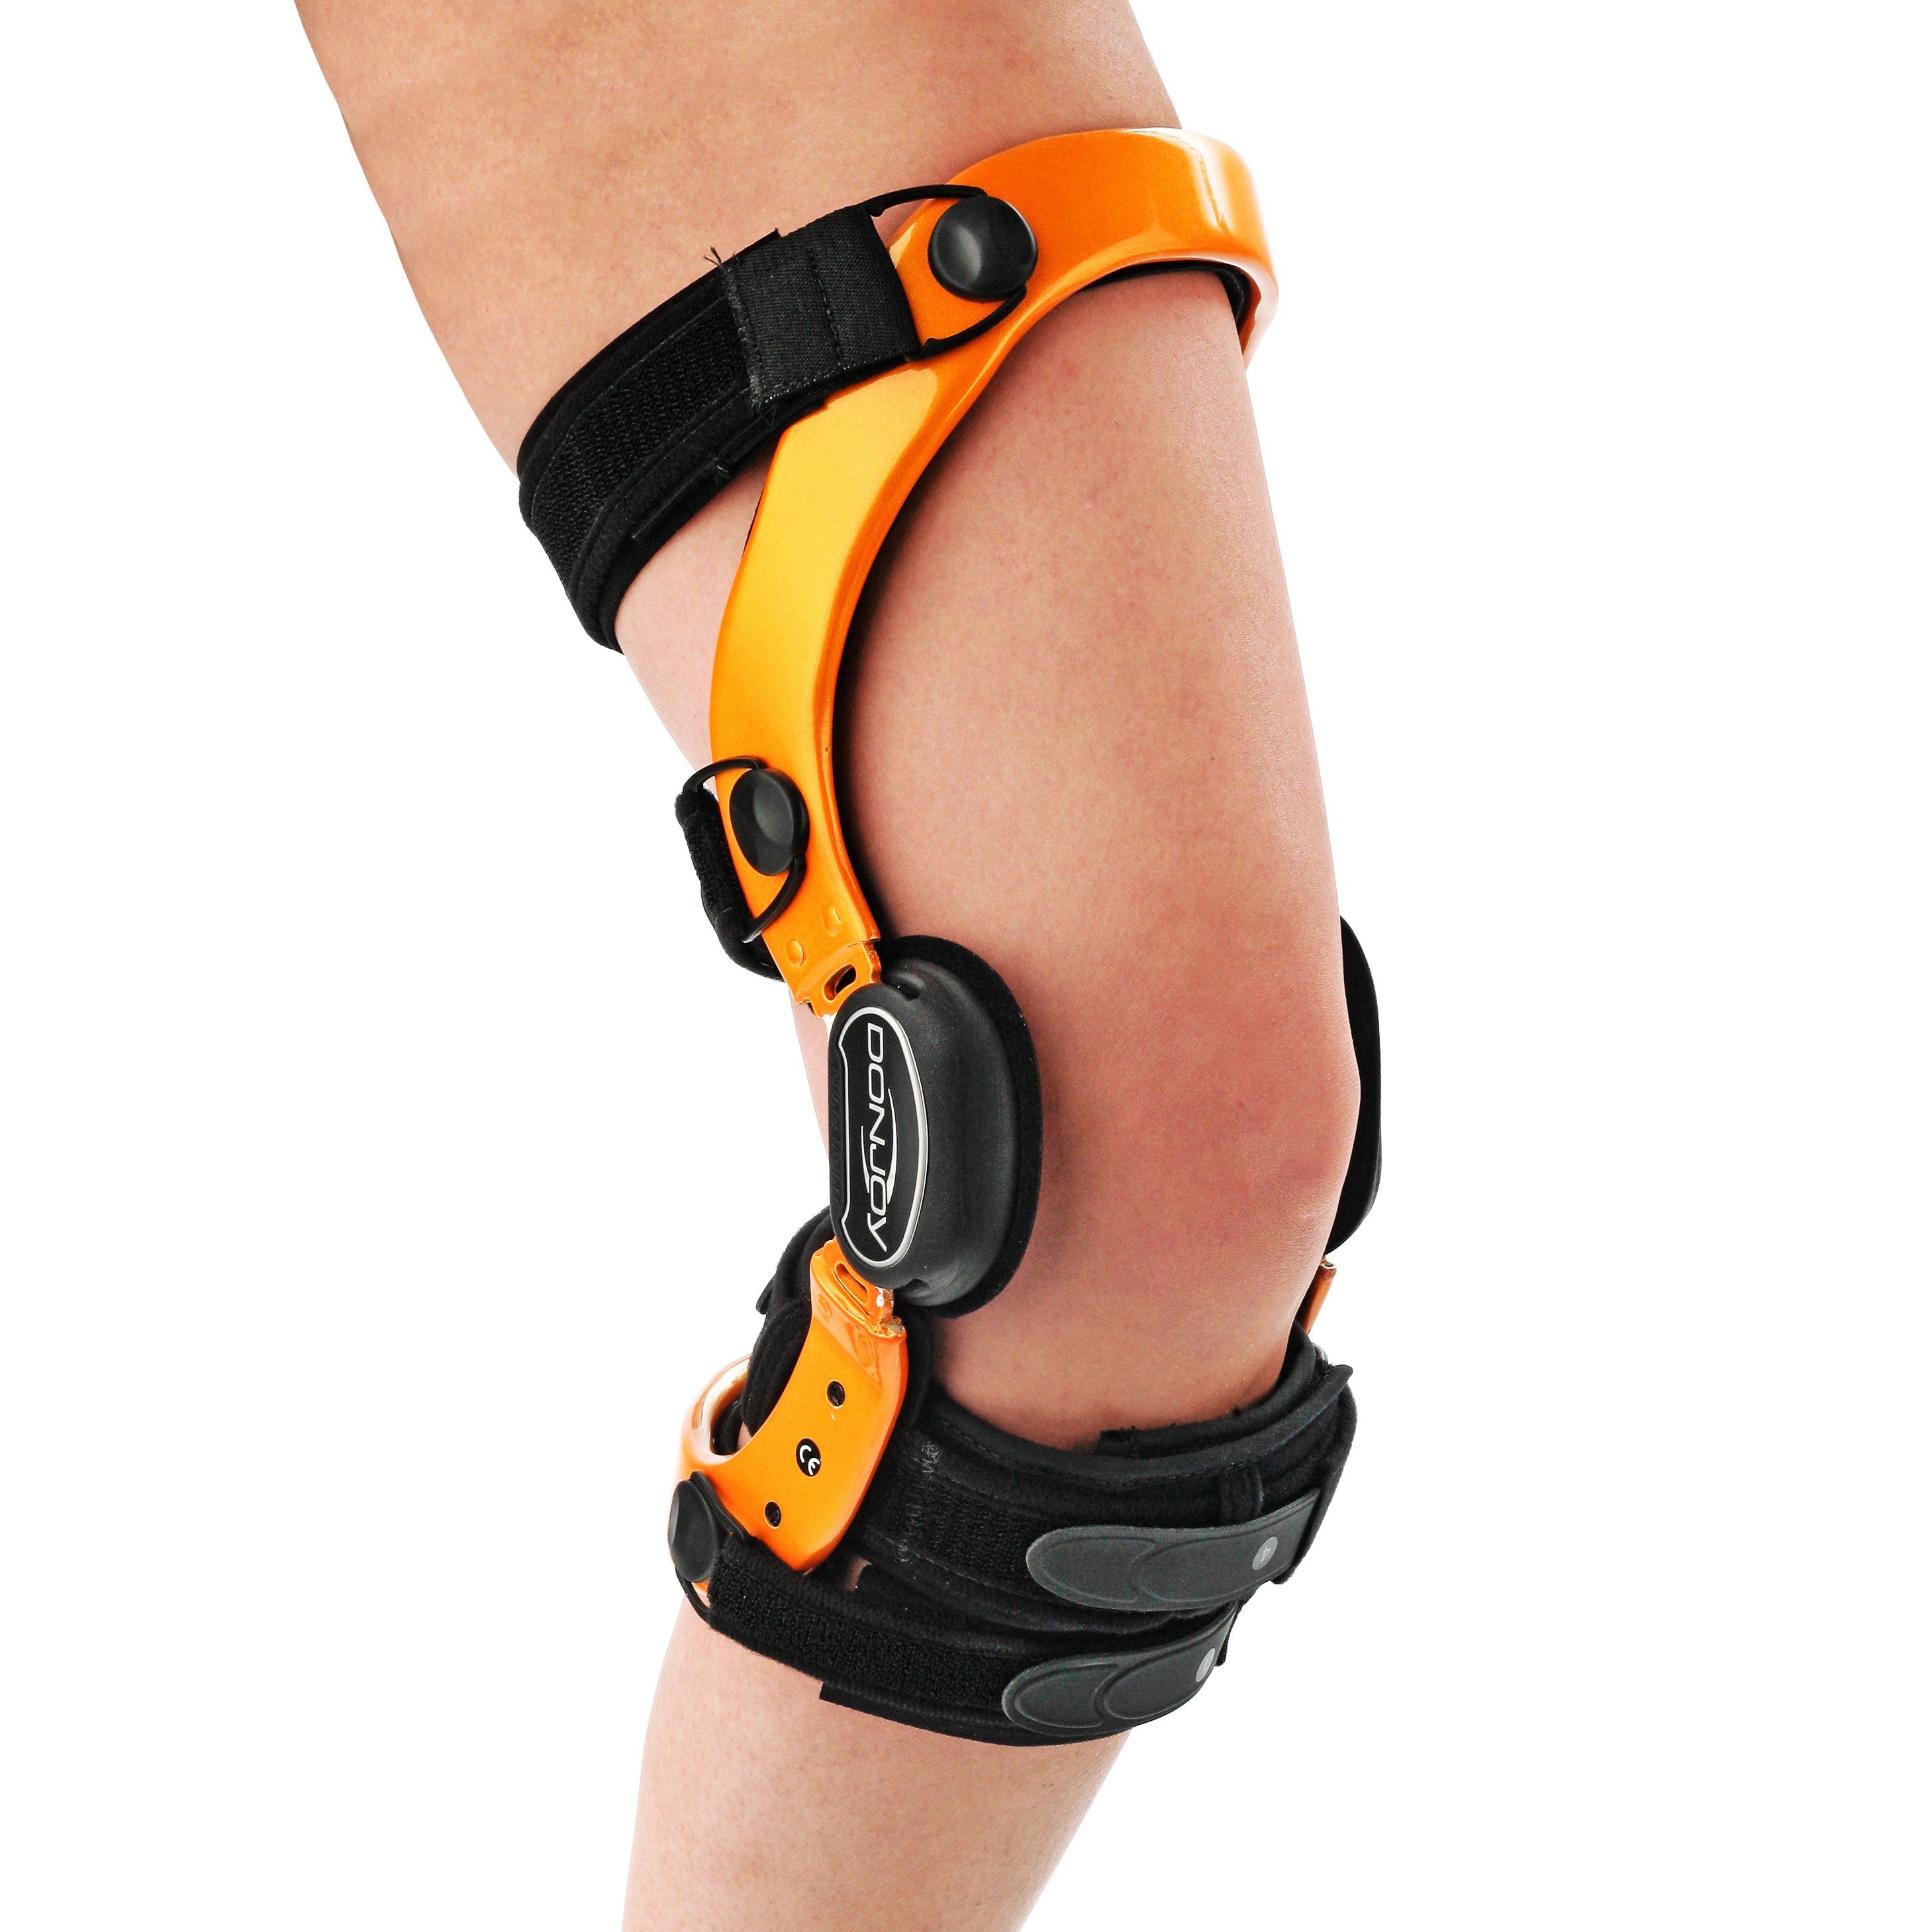 Produktbild DONJOY® Defiance® III, Maßgefertigte Rahmenorthese zur Führung und Stabilisierung des Kniegelenks mit Extensions-/Flexionsbegrenzung